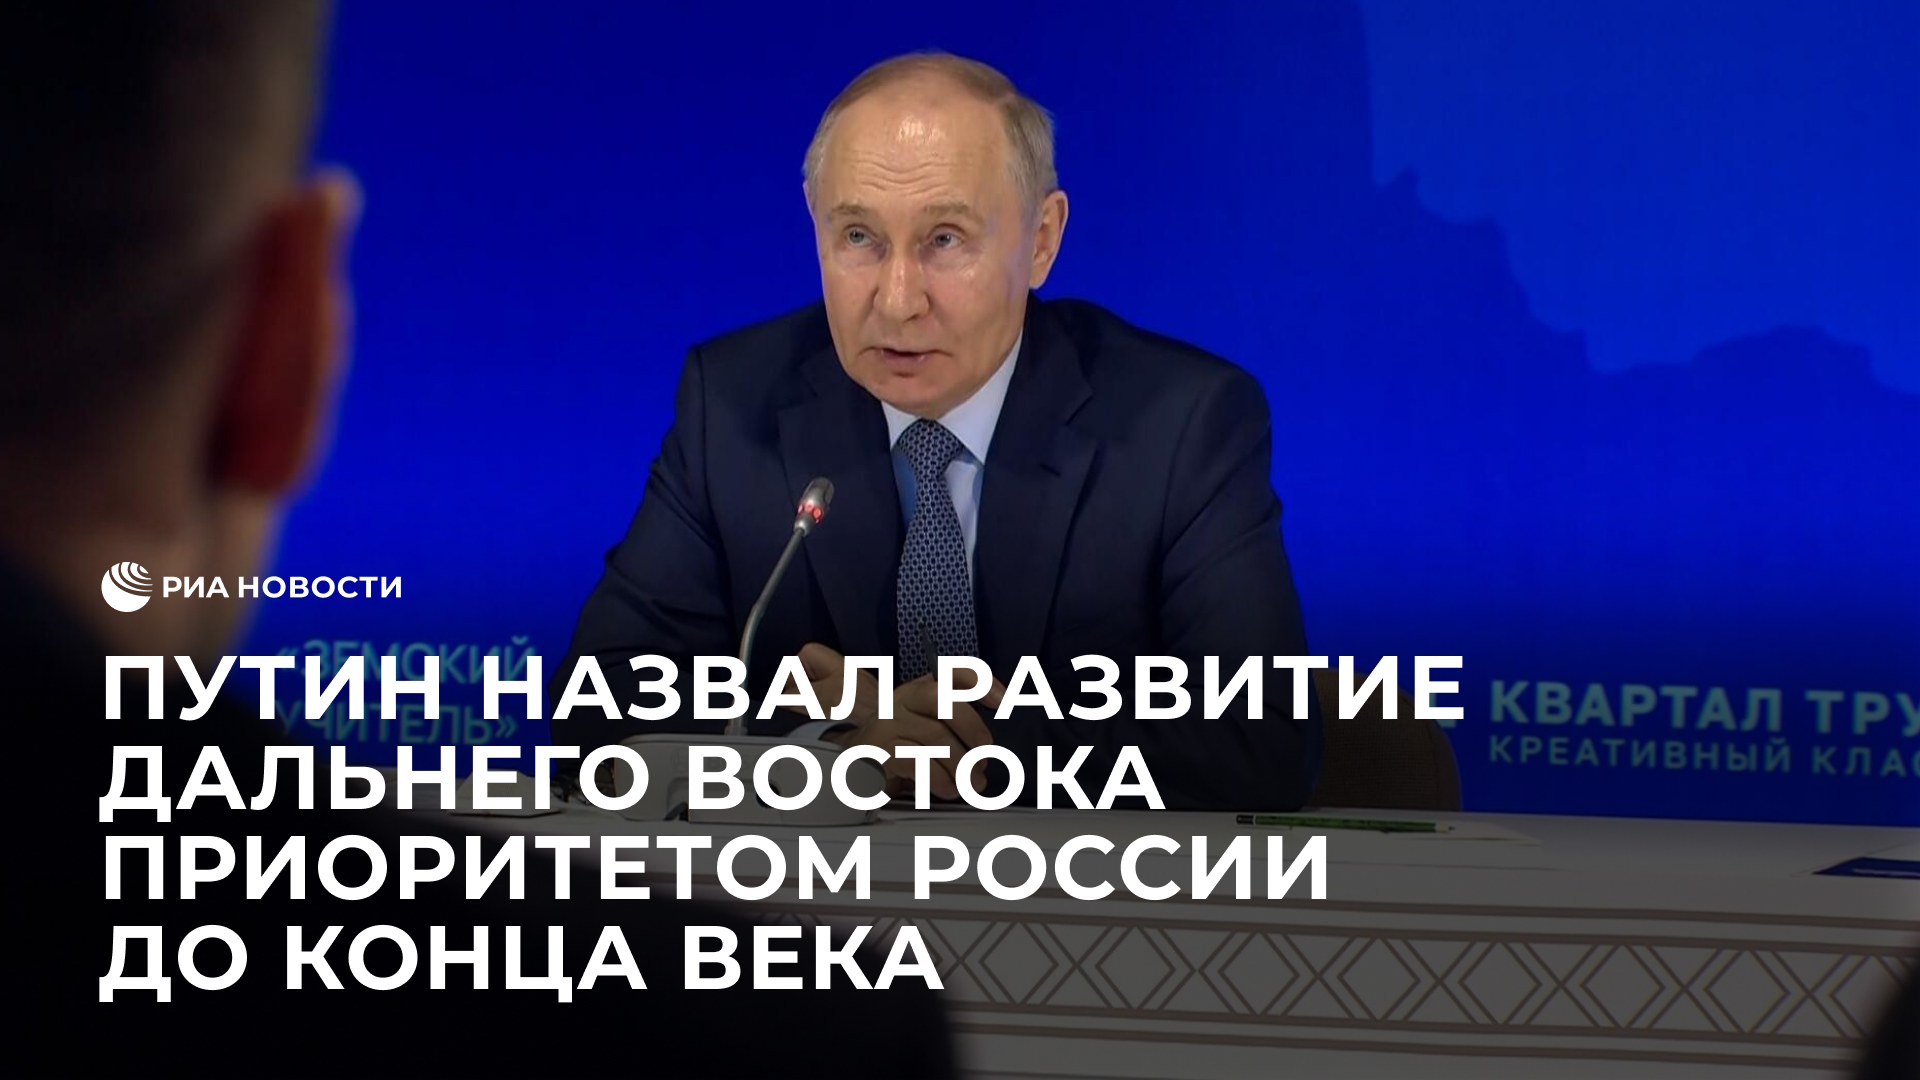 Путин назвал развитие Дальнего Востока приоритетом России до конца века